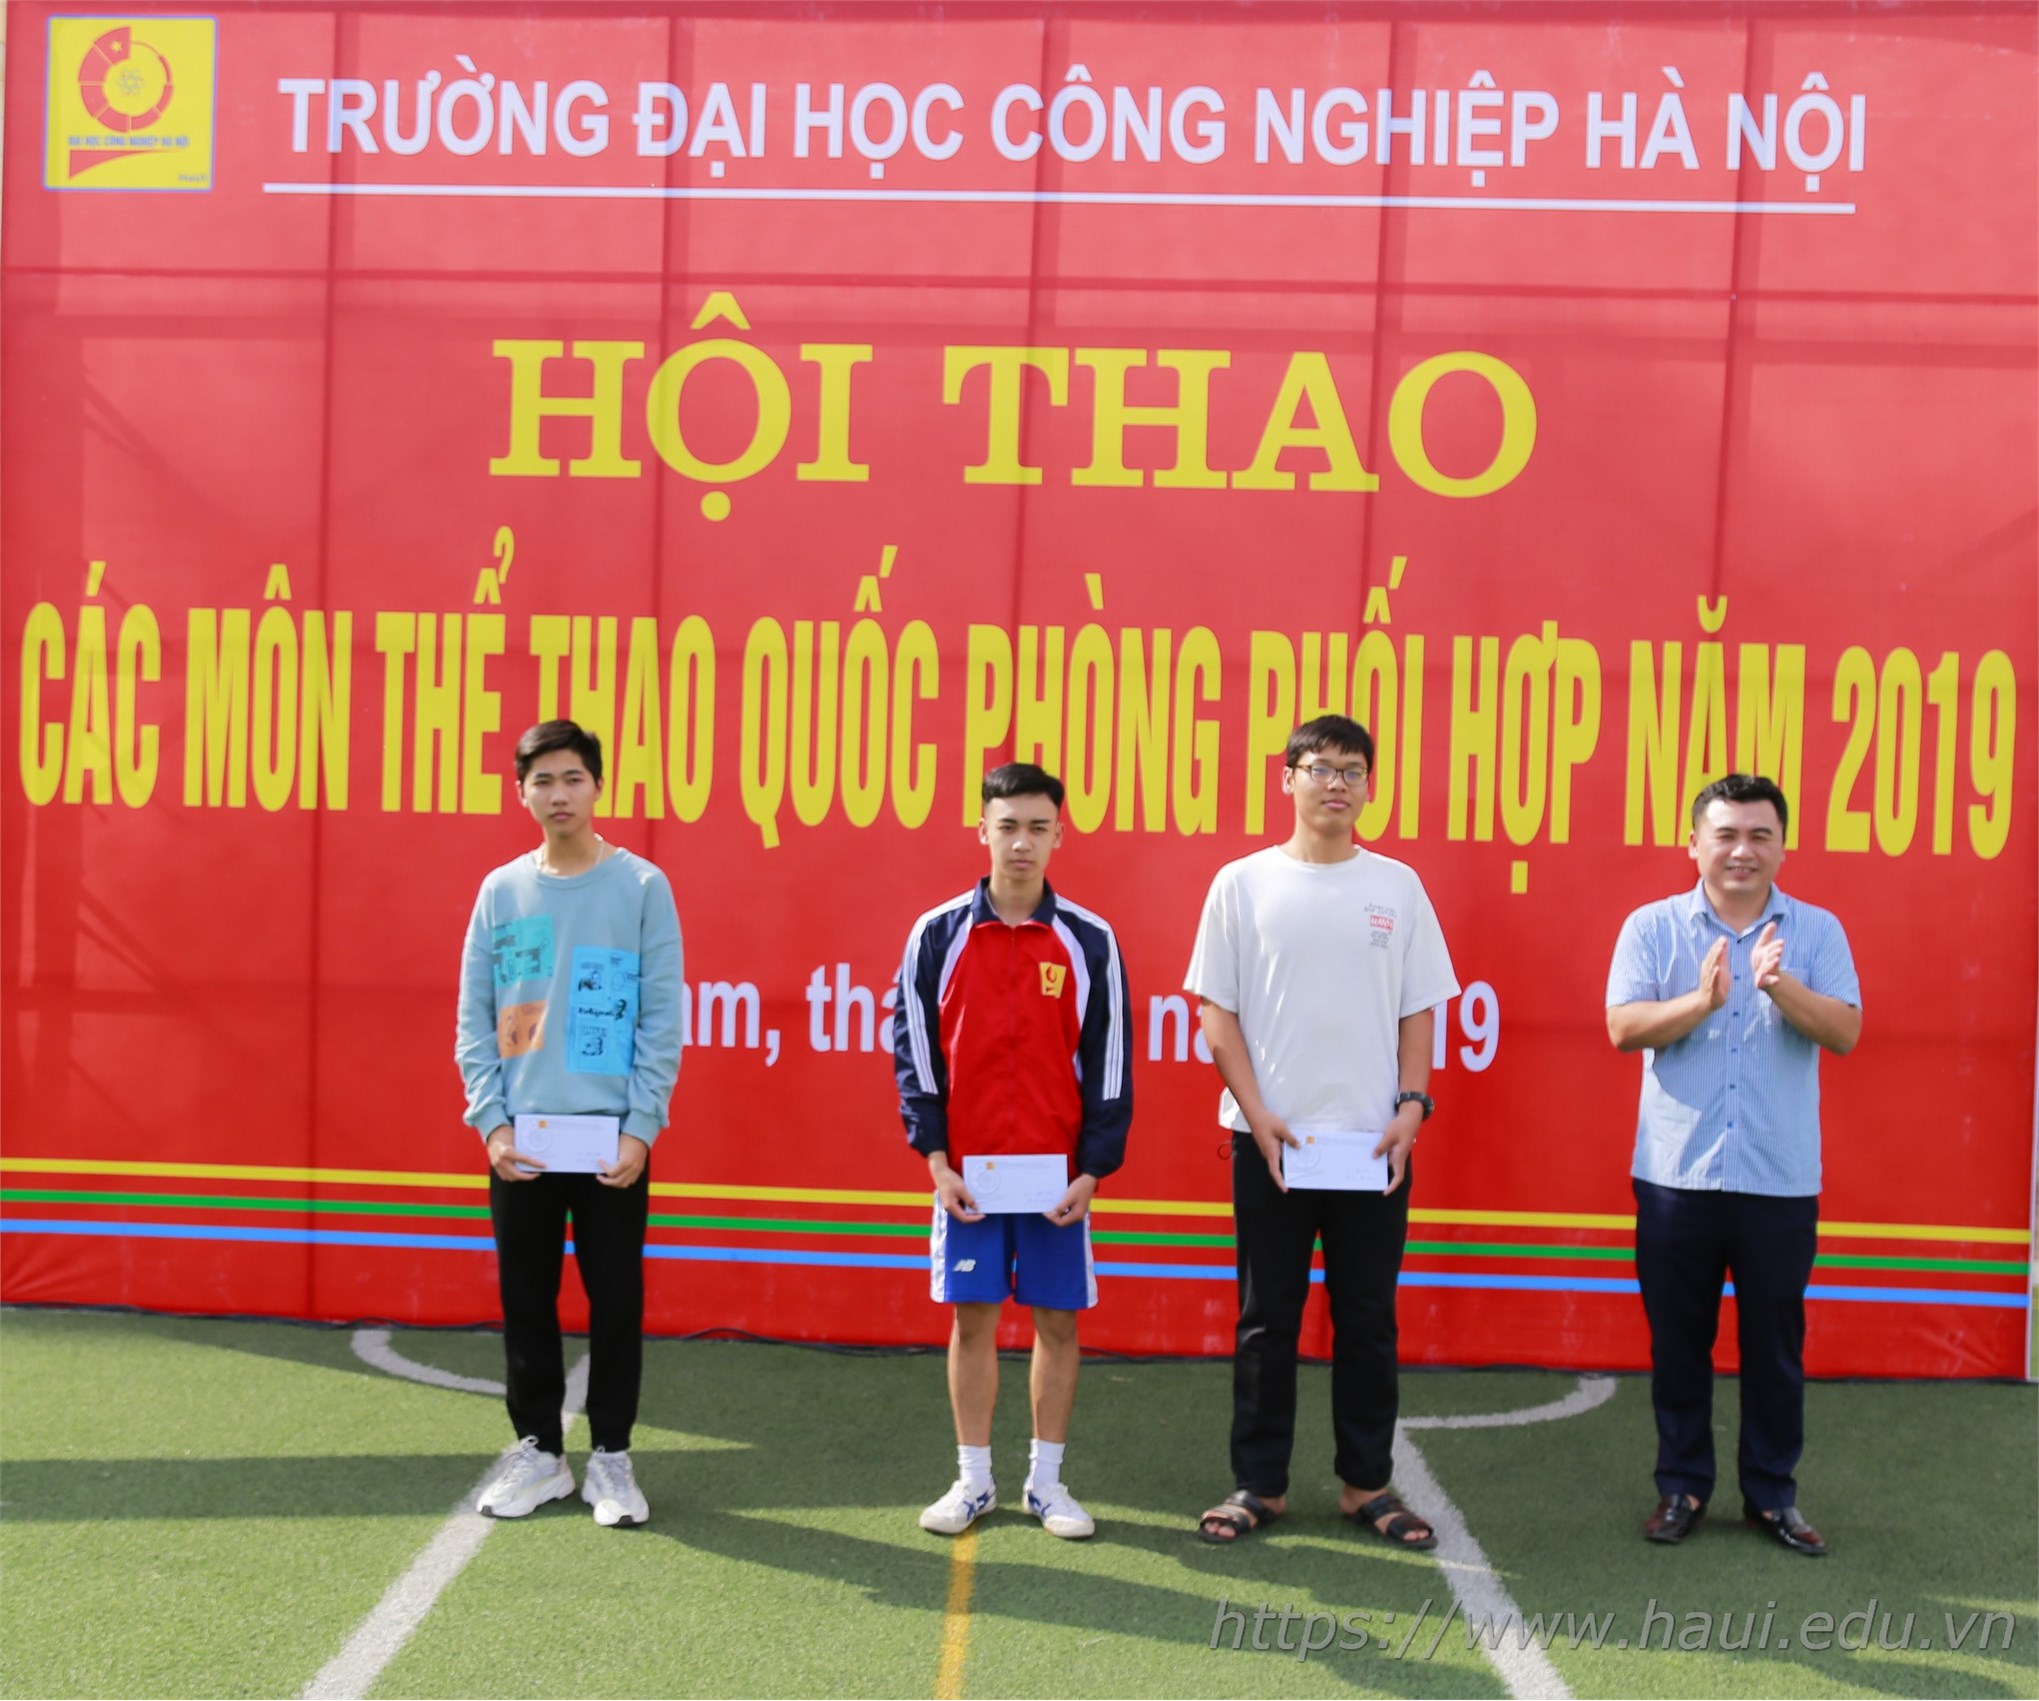 Hội thao các môn thể thao quốc phòng phối hợp trường Đại học Công nghiệp Hà Nội năm 2019